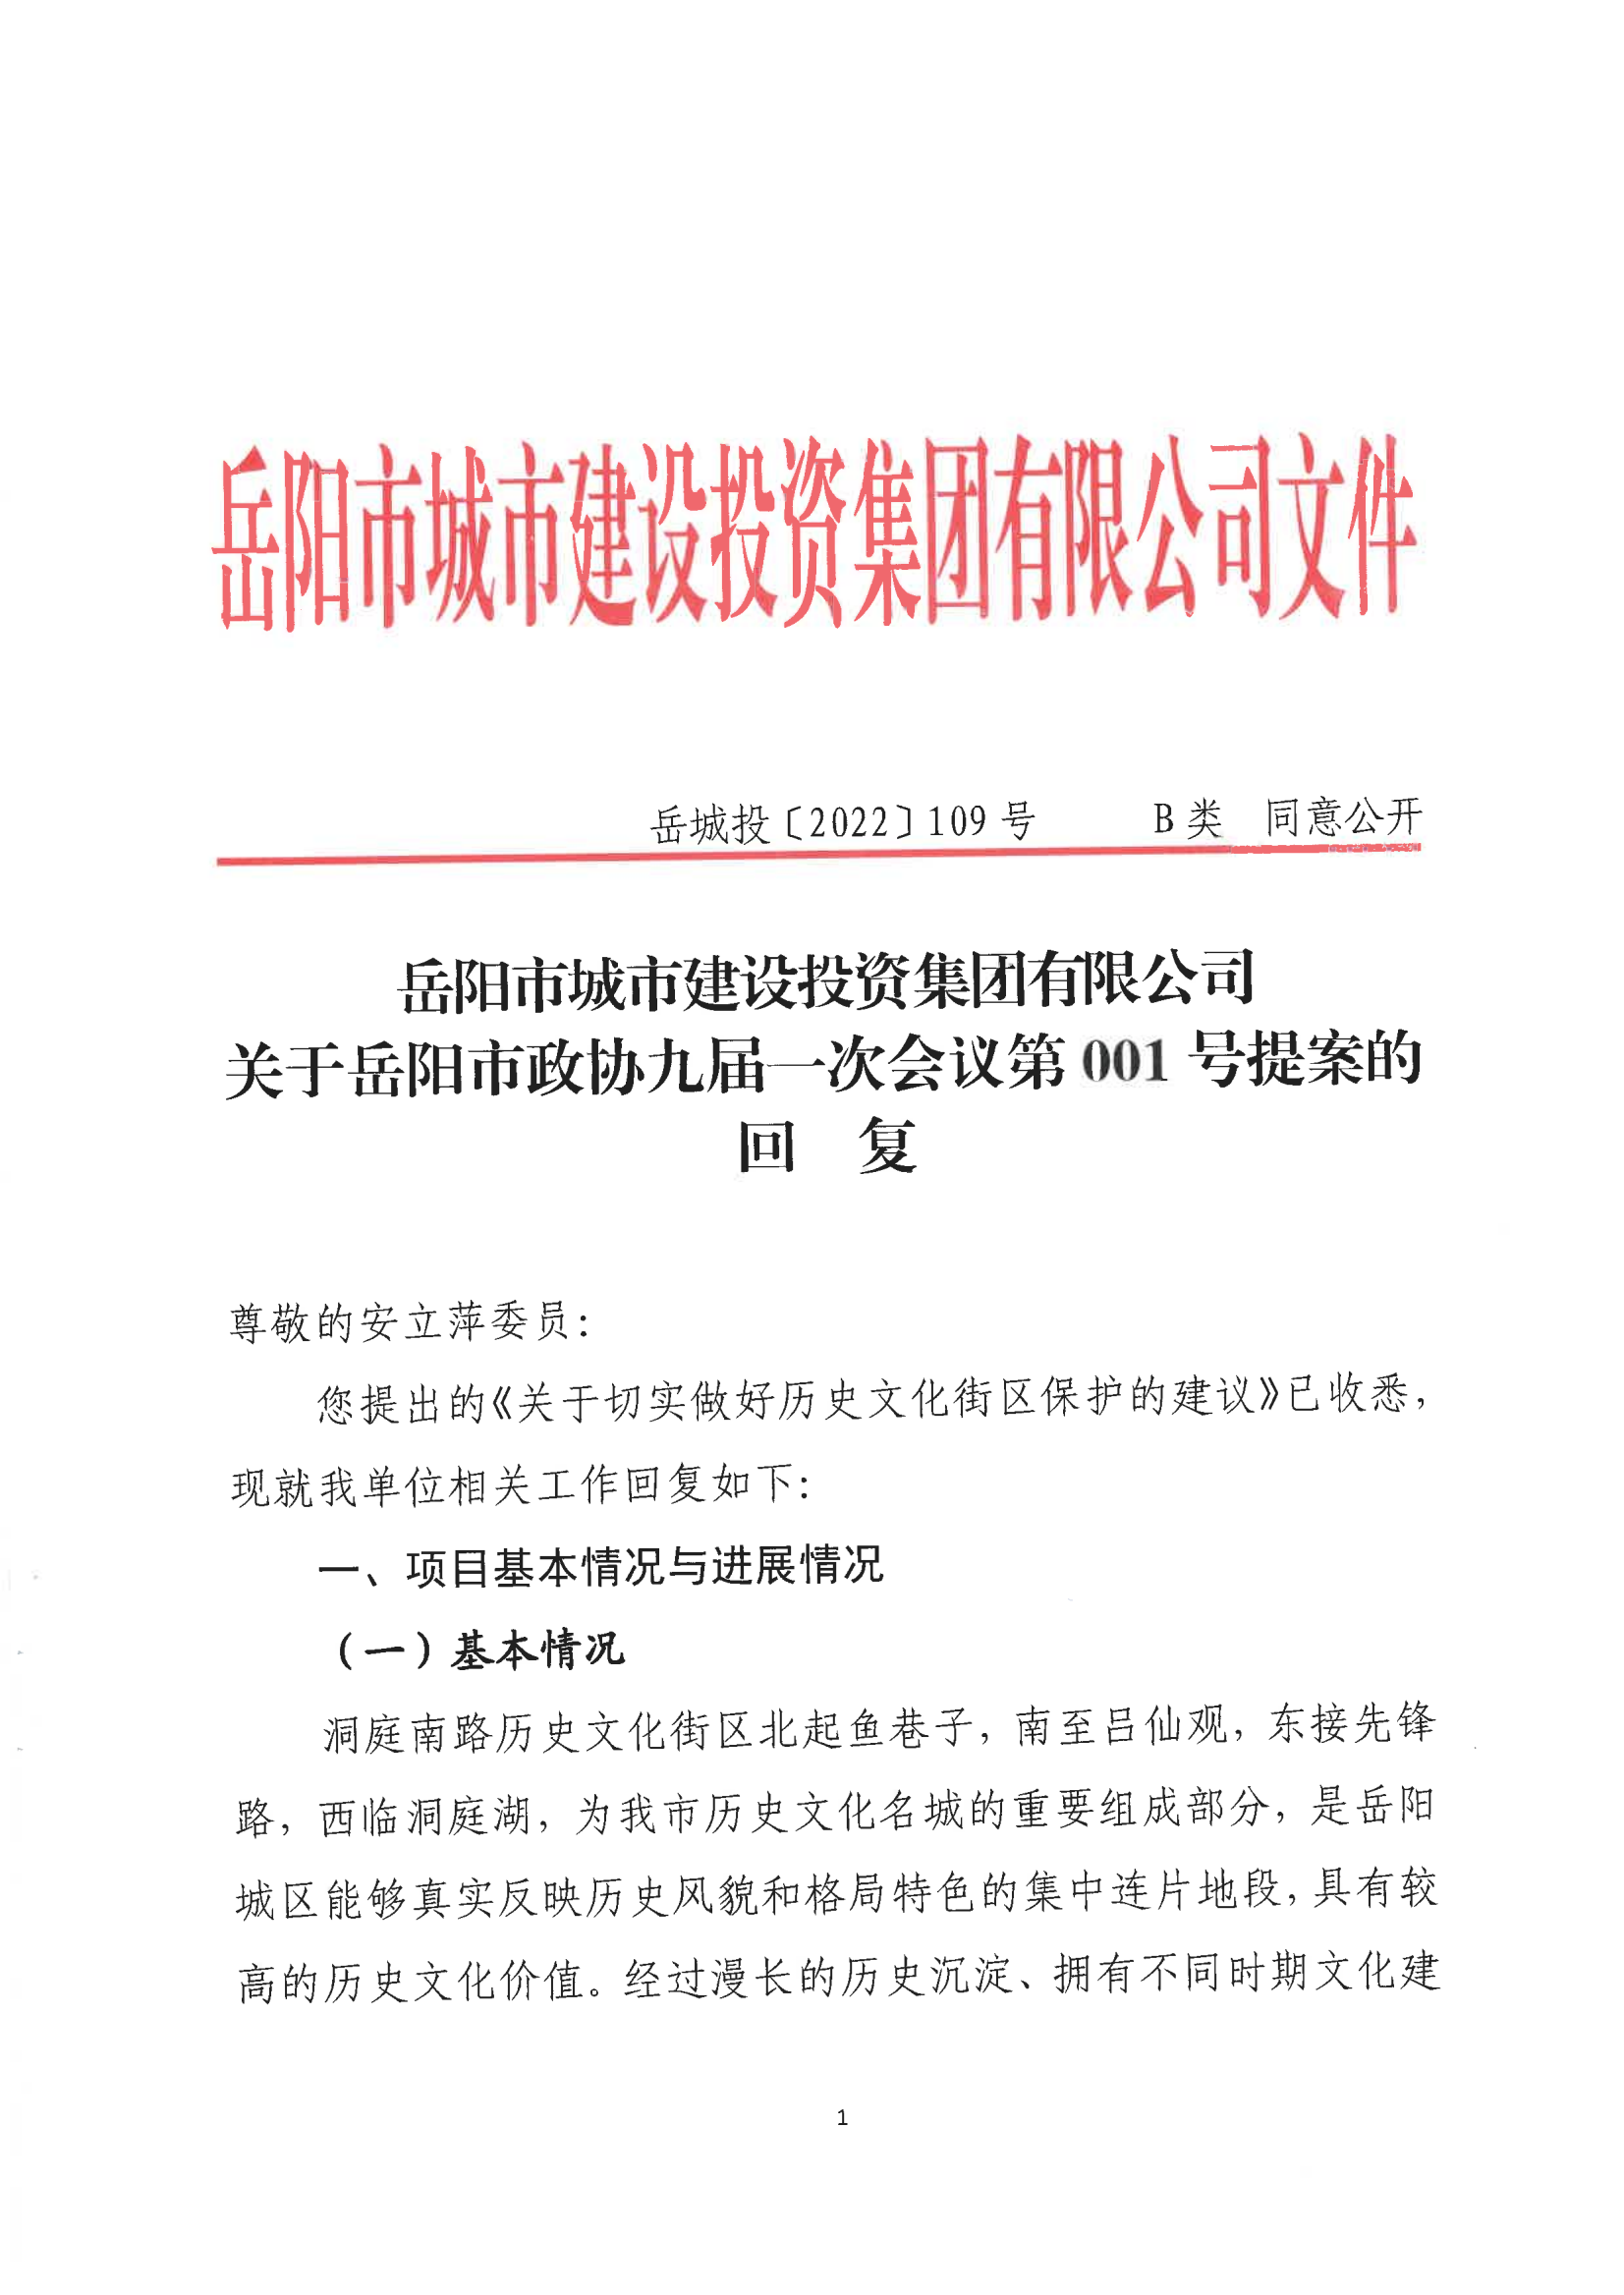 001号提案关于岳阳市政协九届一次会议第001号提案的回复(1)_00.png